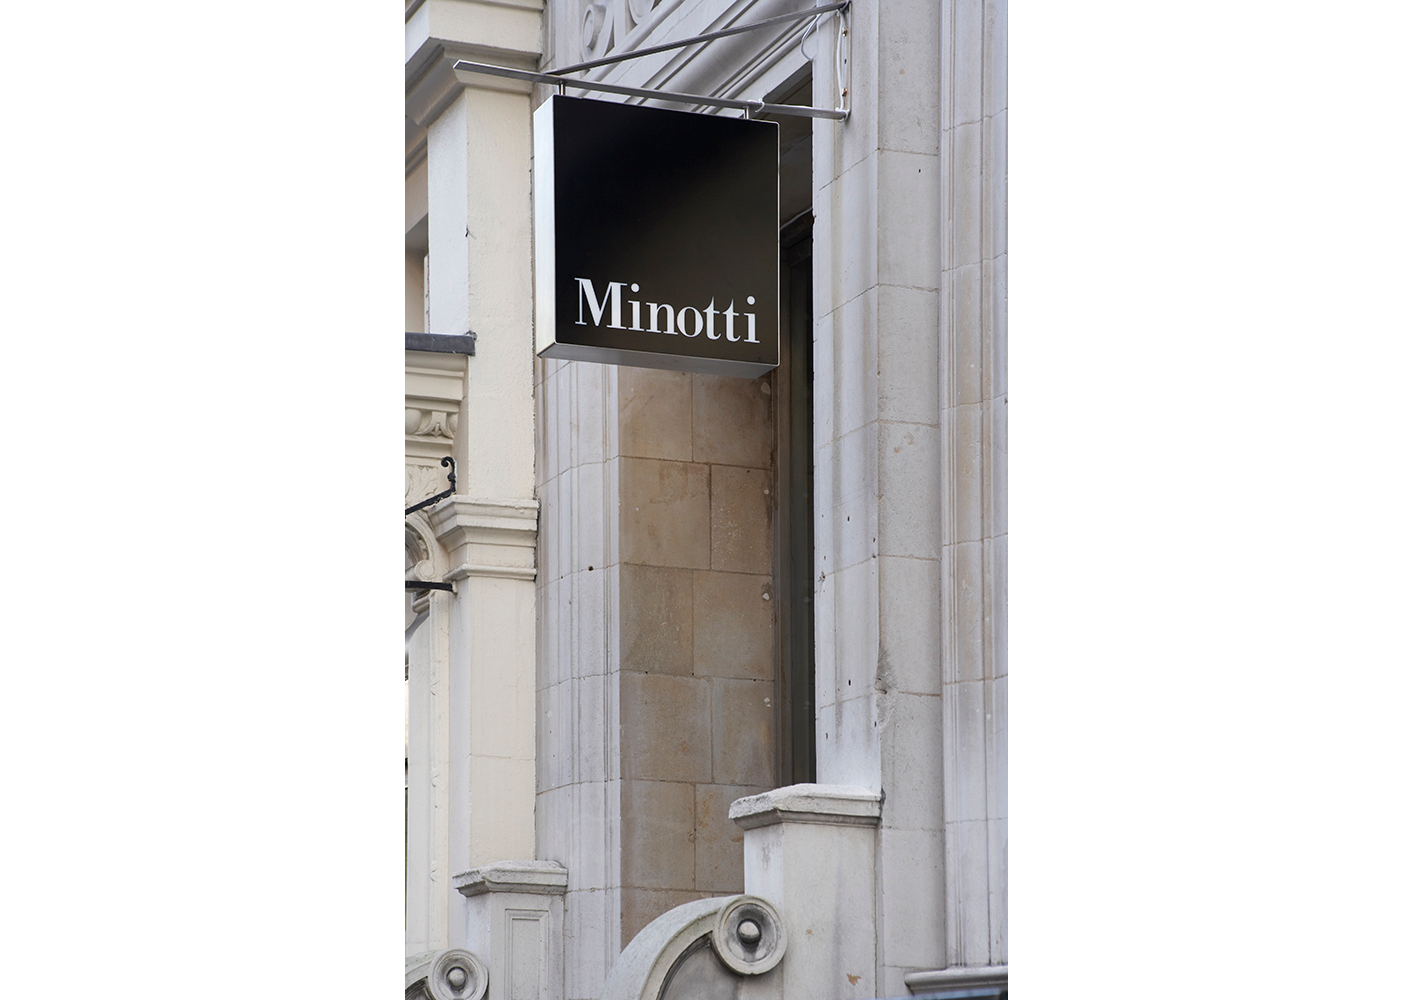 Minotti London by Edc